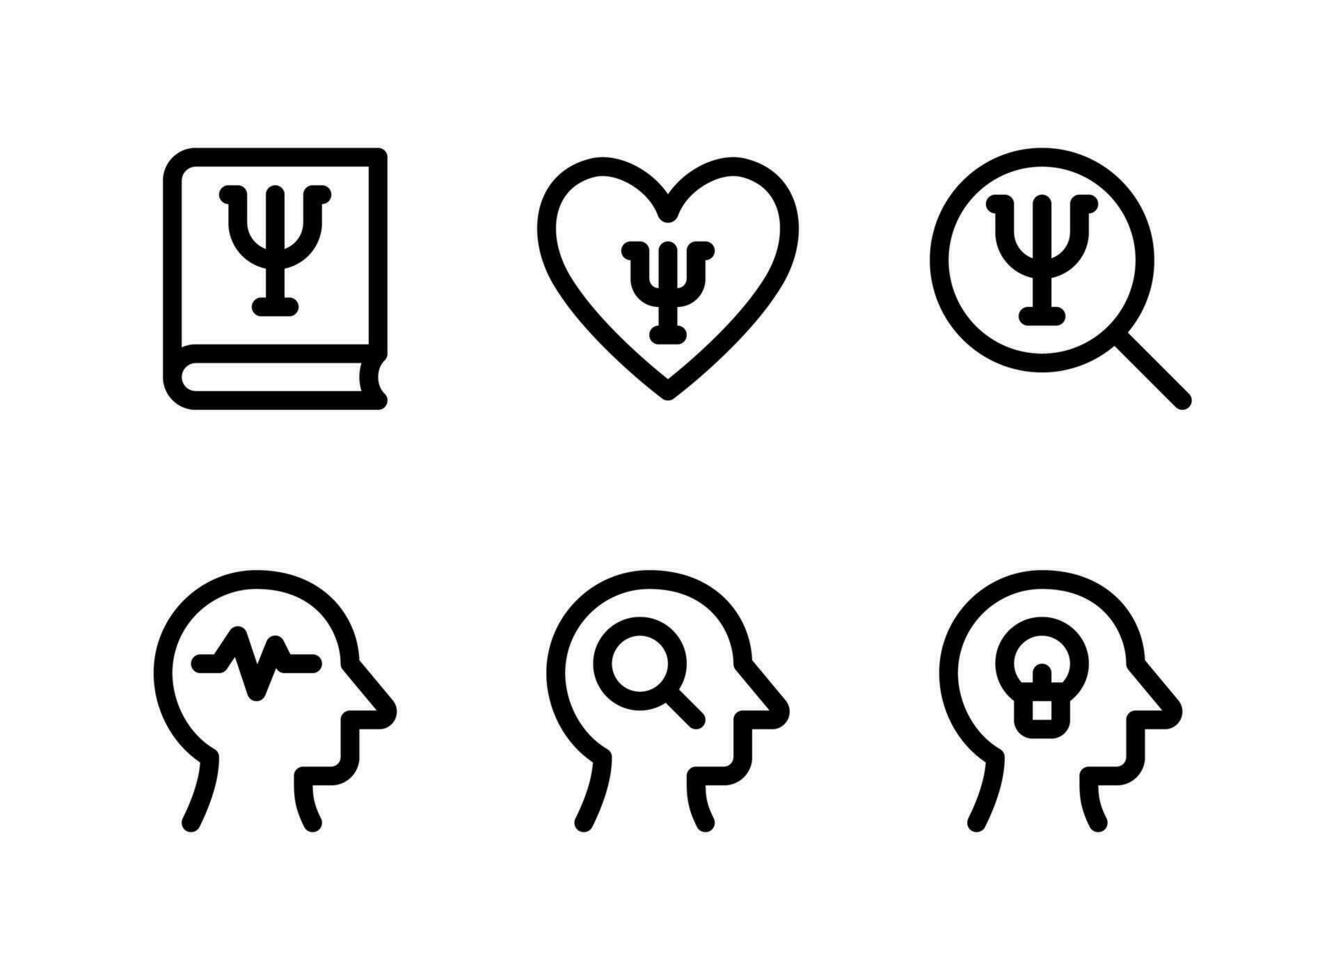 semplice set di icone di linee vettoriali relative alla salute mentale